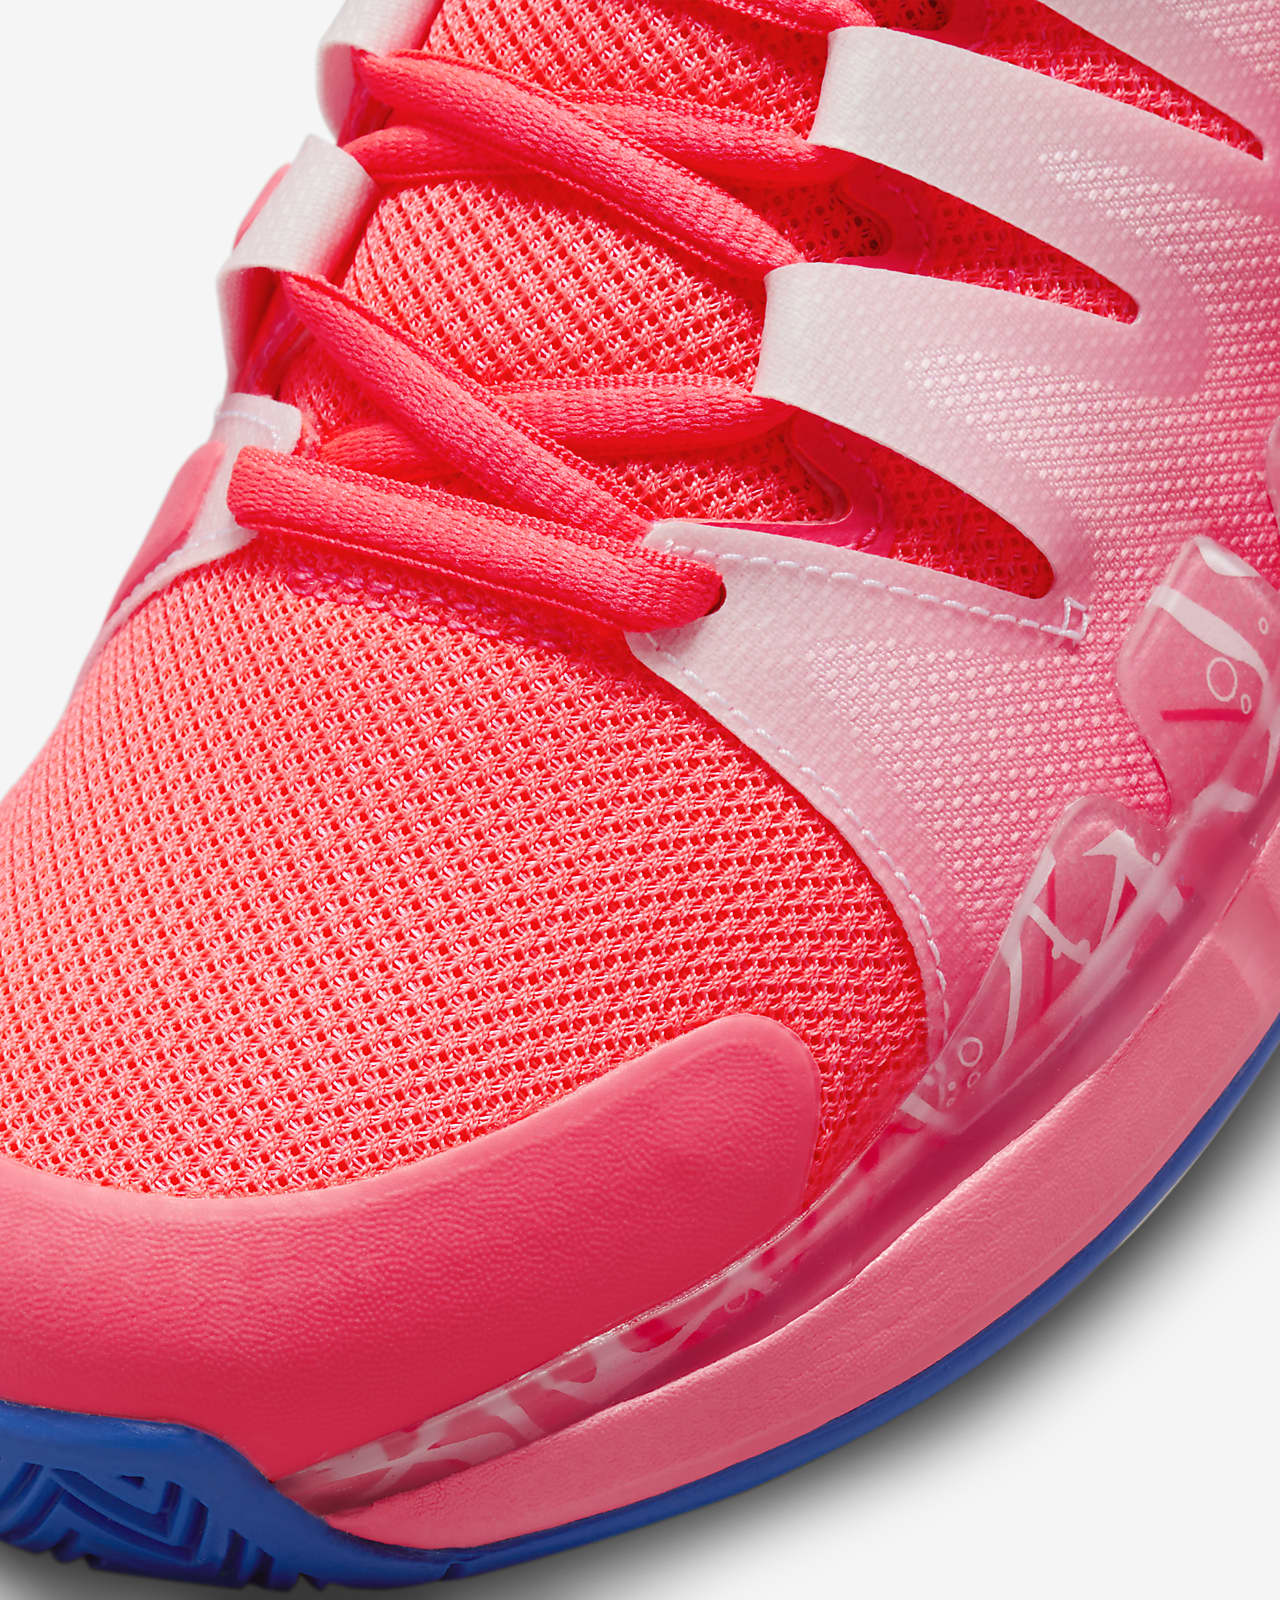 NikeCourt Air Zoom Vapor 9.5 Tour Men's Tennis Shoes